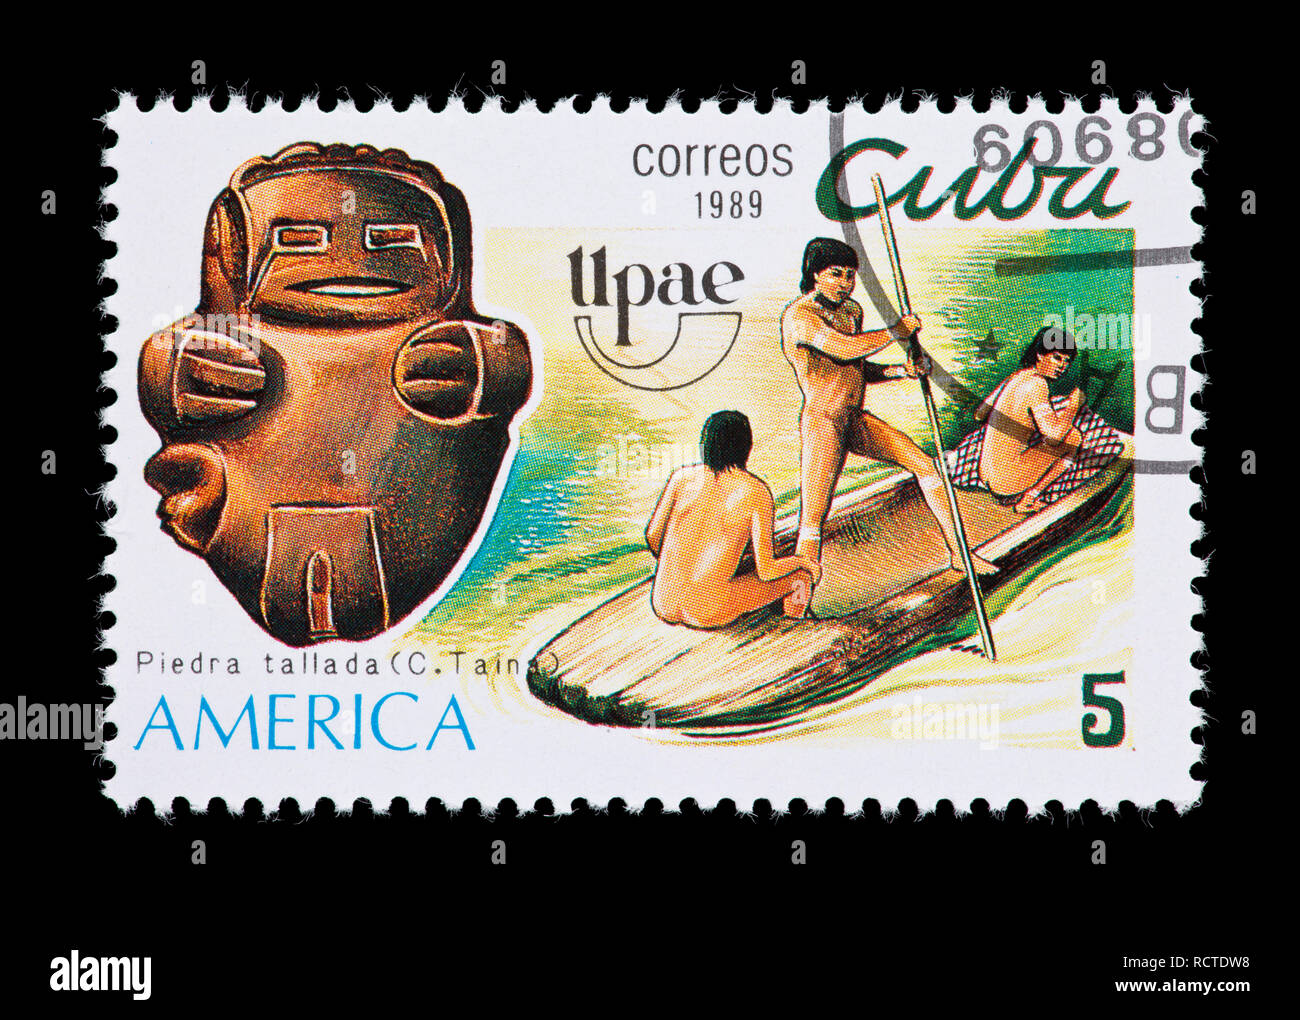 Francobollo da Cuba raffigurante una scultura in pietra e gli indiani su una piroga Foto Stock